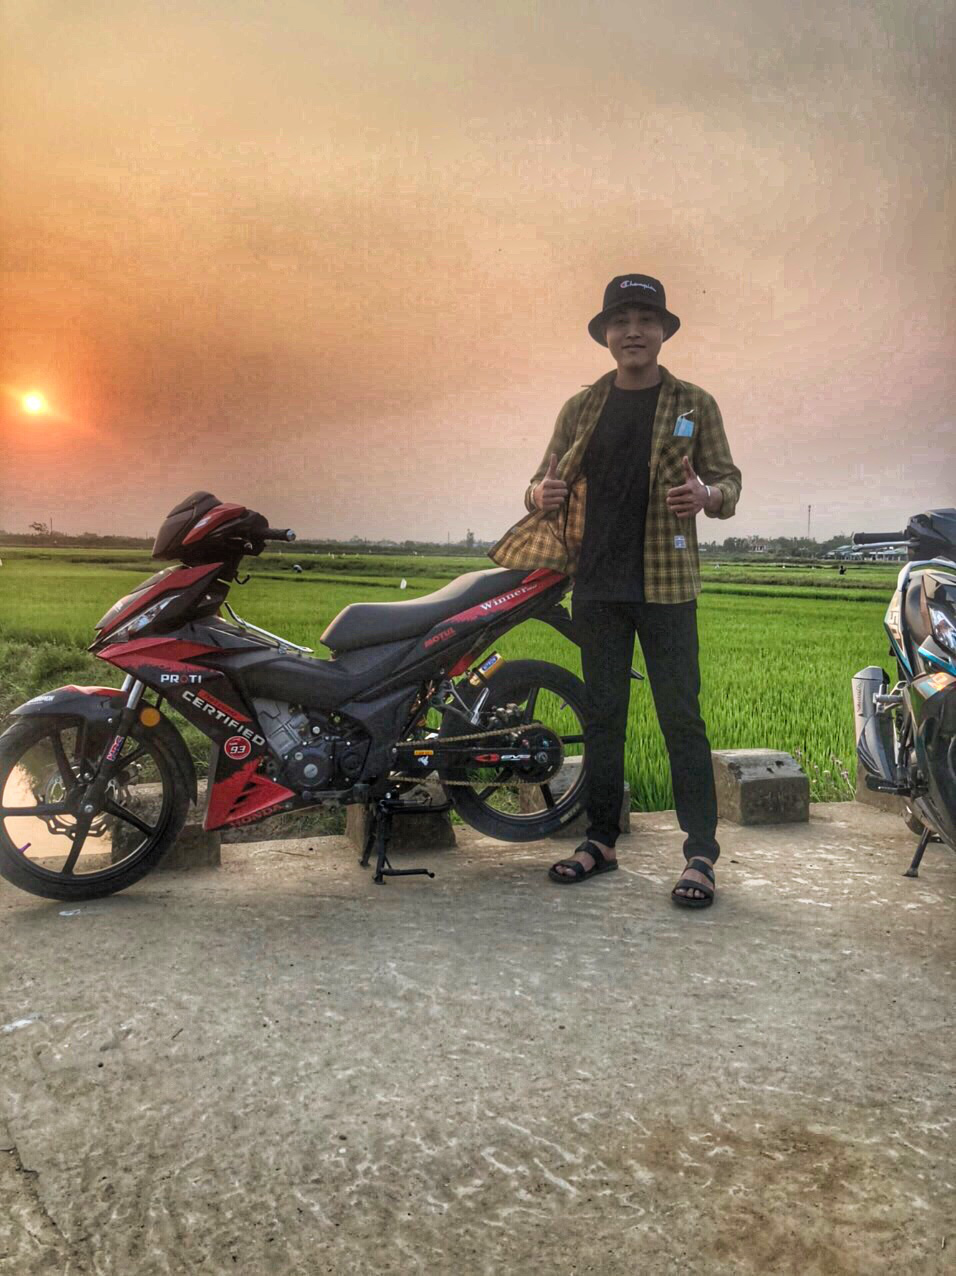 Biker Việt: Bạn là một fan của các chuyến đi phượt trên những chiếc xe đồ sộ? Hãy tham gia cùng chúng tôi trong cộng đồng Biker Việt để chia sẻ những kinh nghiệm, cập nhật những buổi họp mặt và sự kiện hấp dẫn nhất của giới đi xe. Hàng ngàn thành viên đam mê xe máy đang chờ đón bạn!